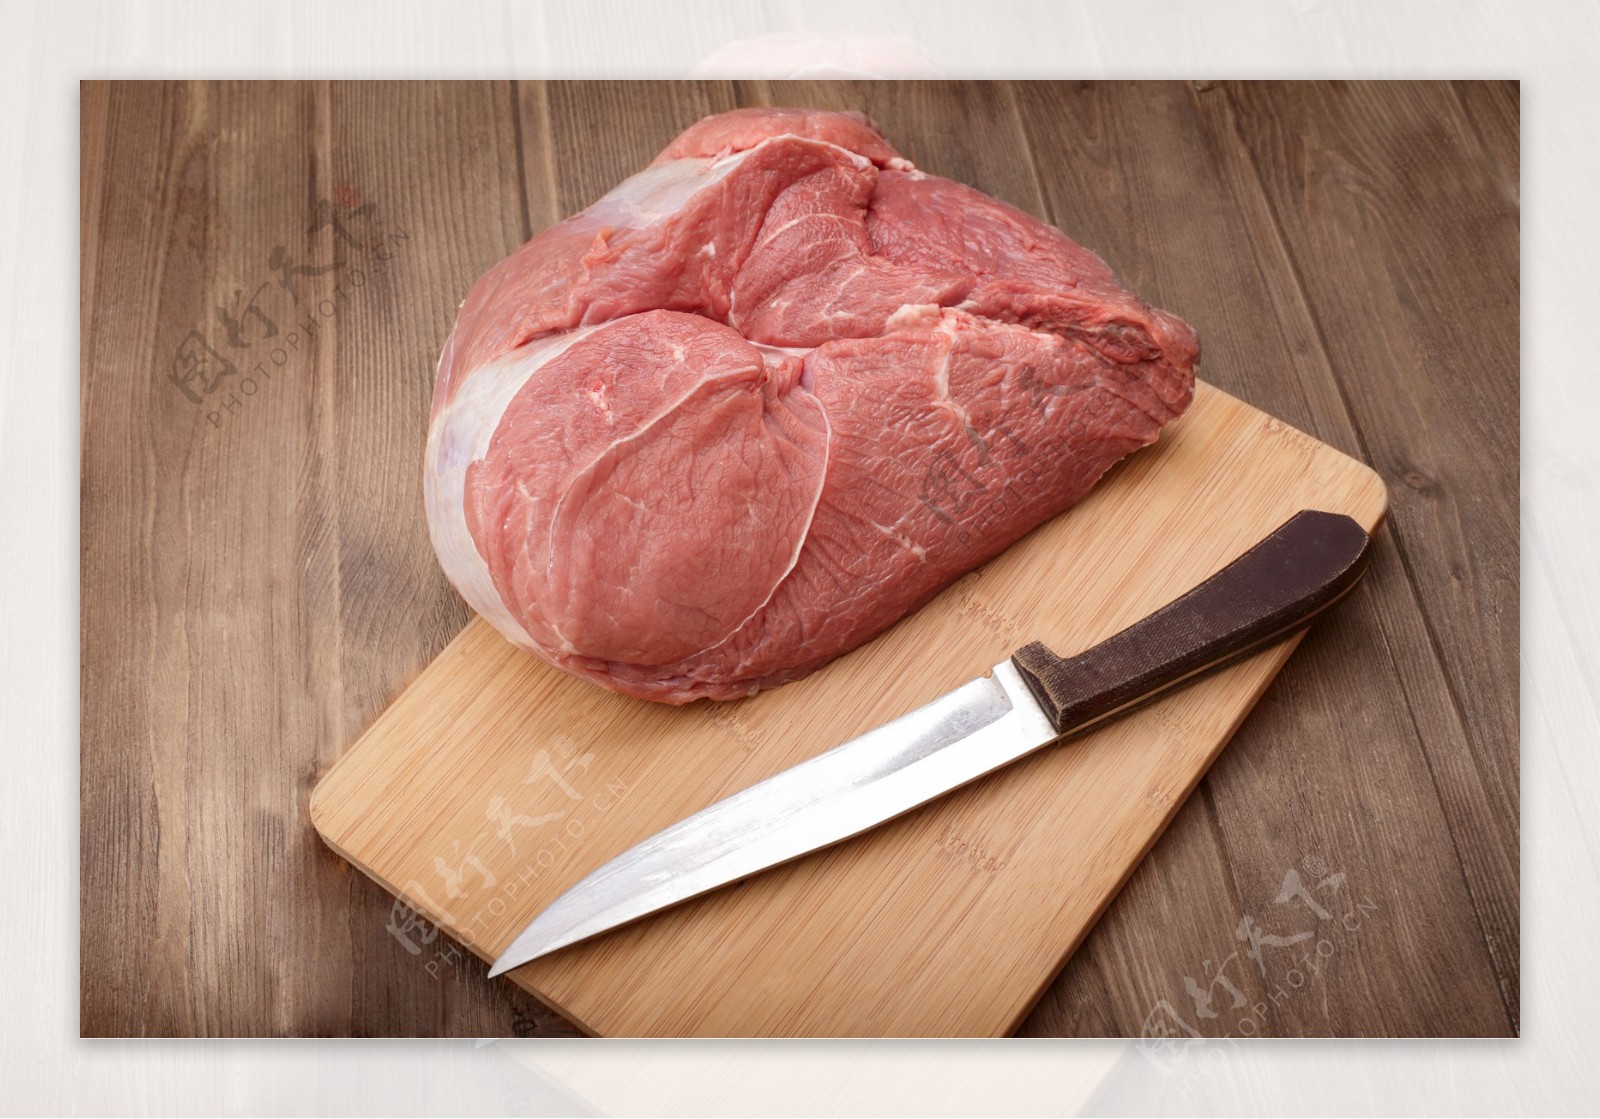 砧板上的瘦肉与刀